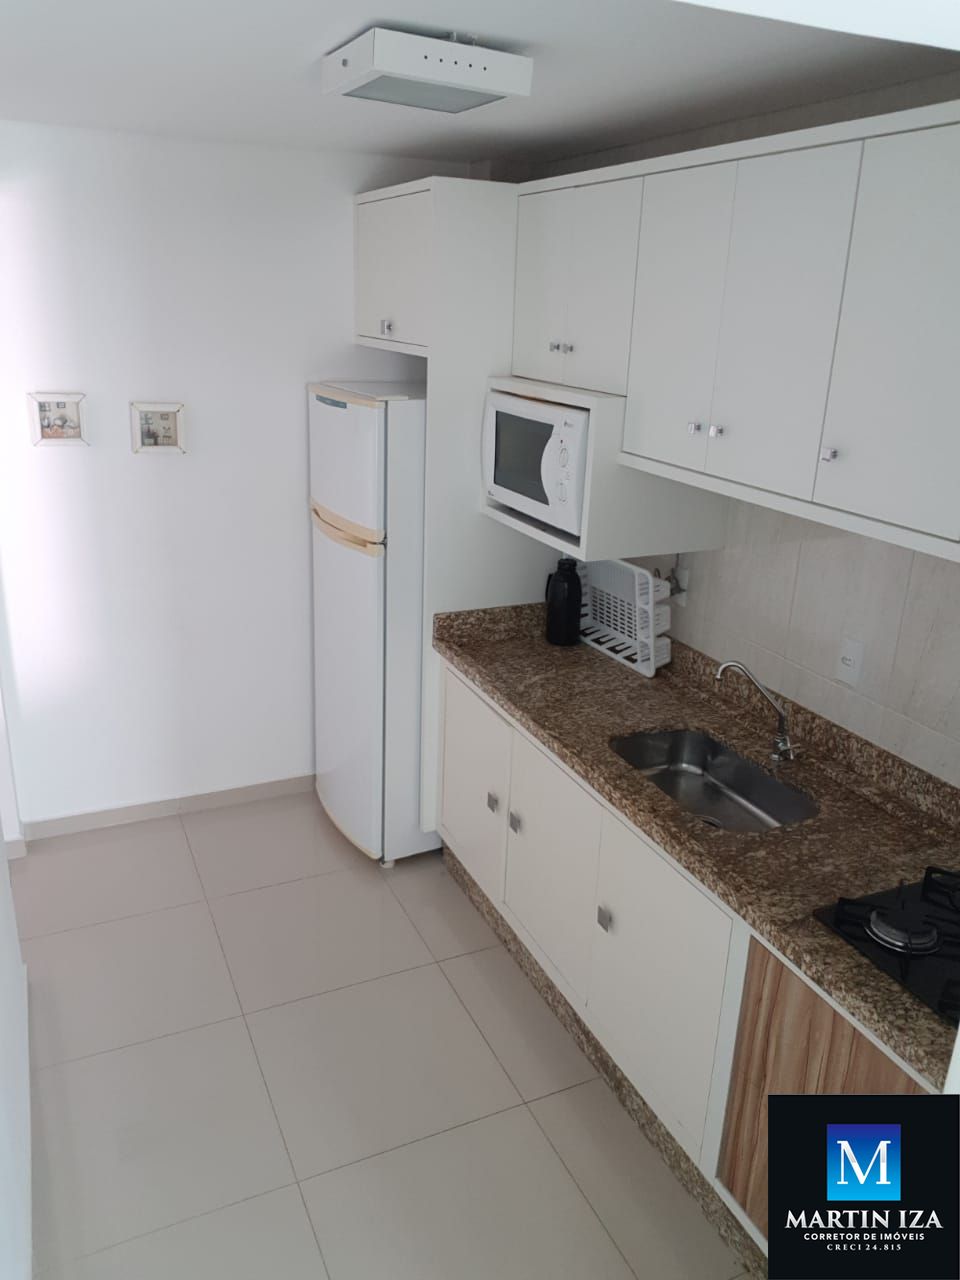 Apartamento com 2 Dormitórios para alugar, 70 m² por R$ 250,00